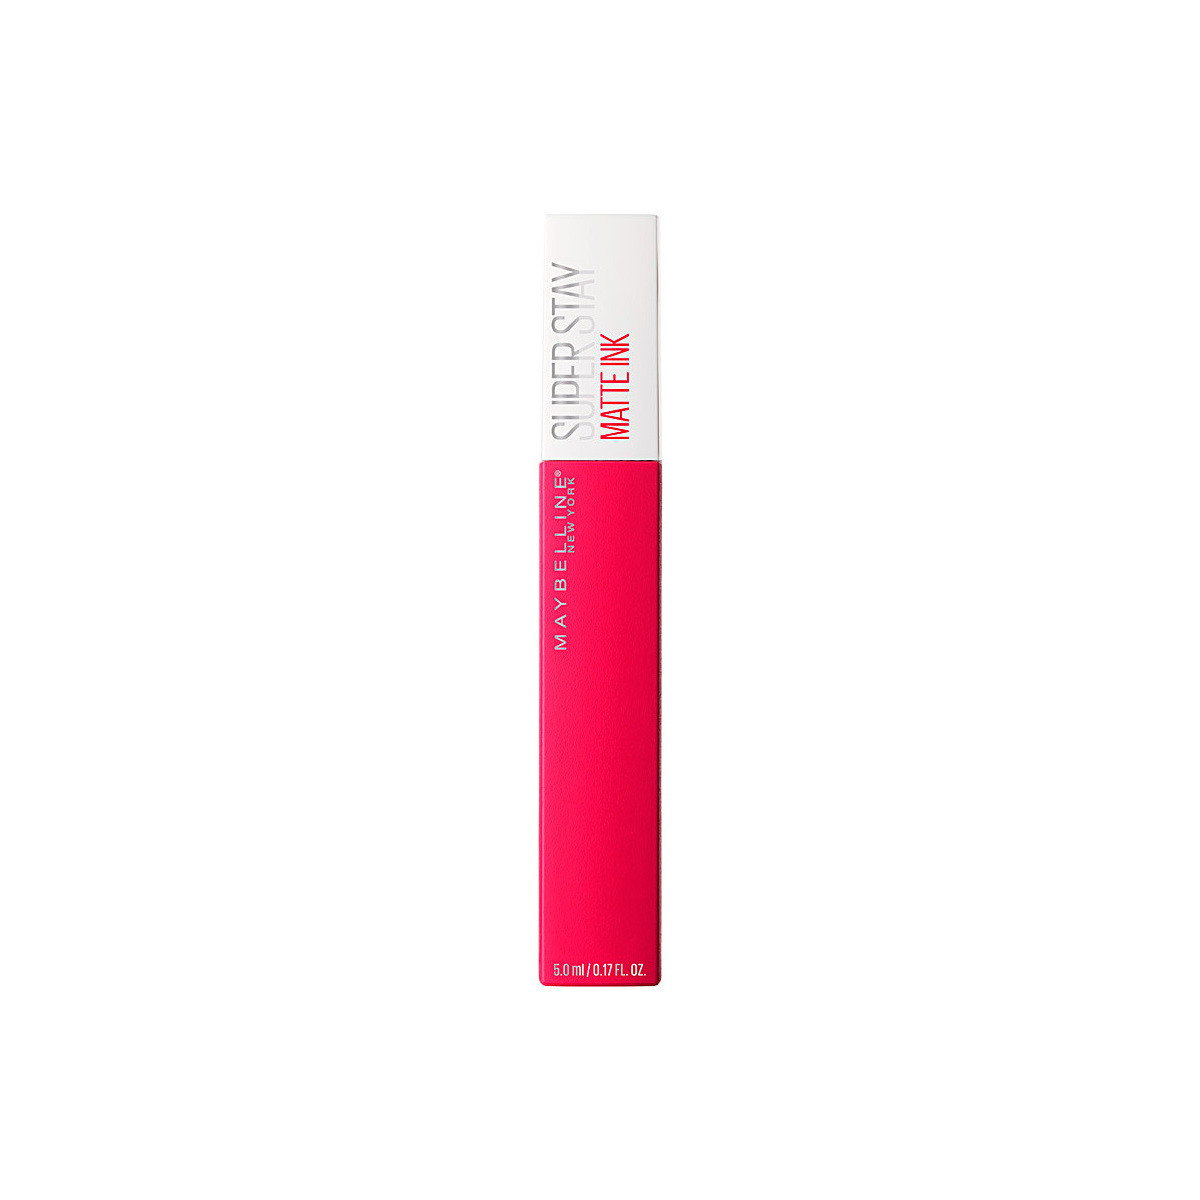 Bellezza Donna Rossetti Maybelline New York Superstay Matte Ink Liquid Lipstick 150-path Finder 